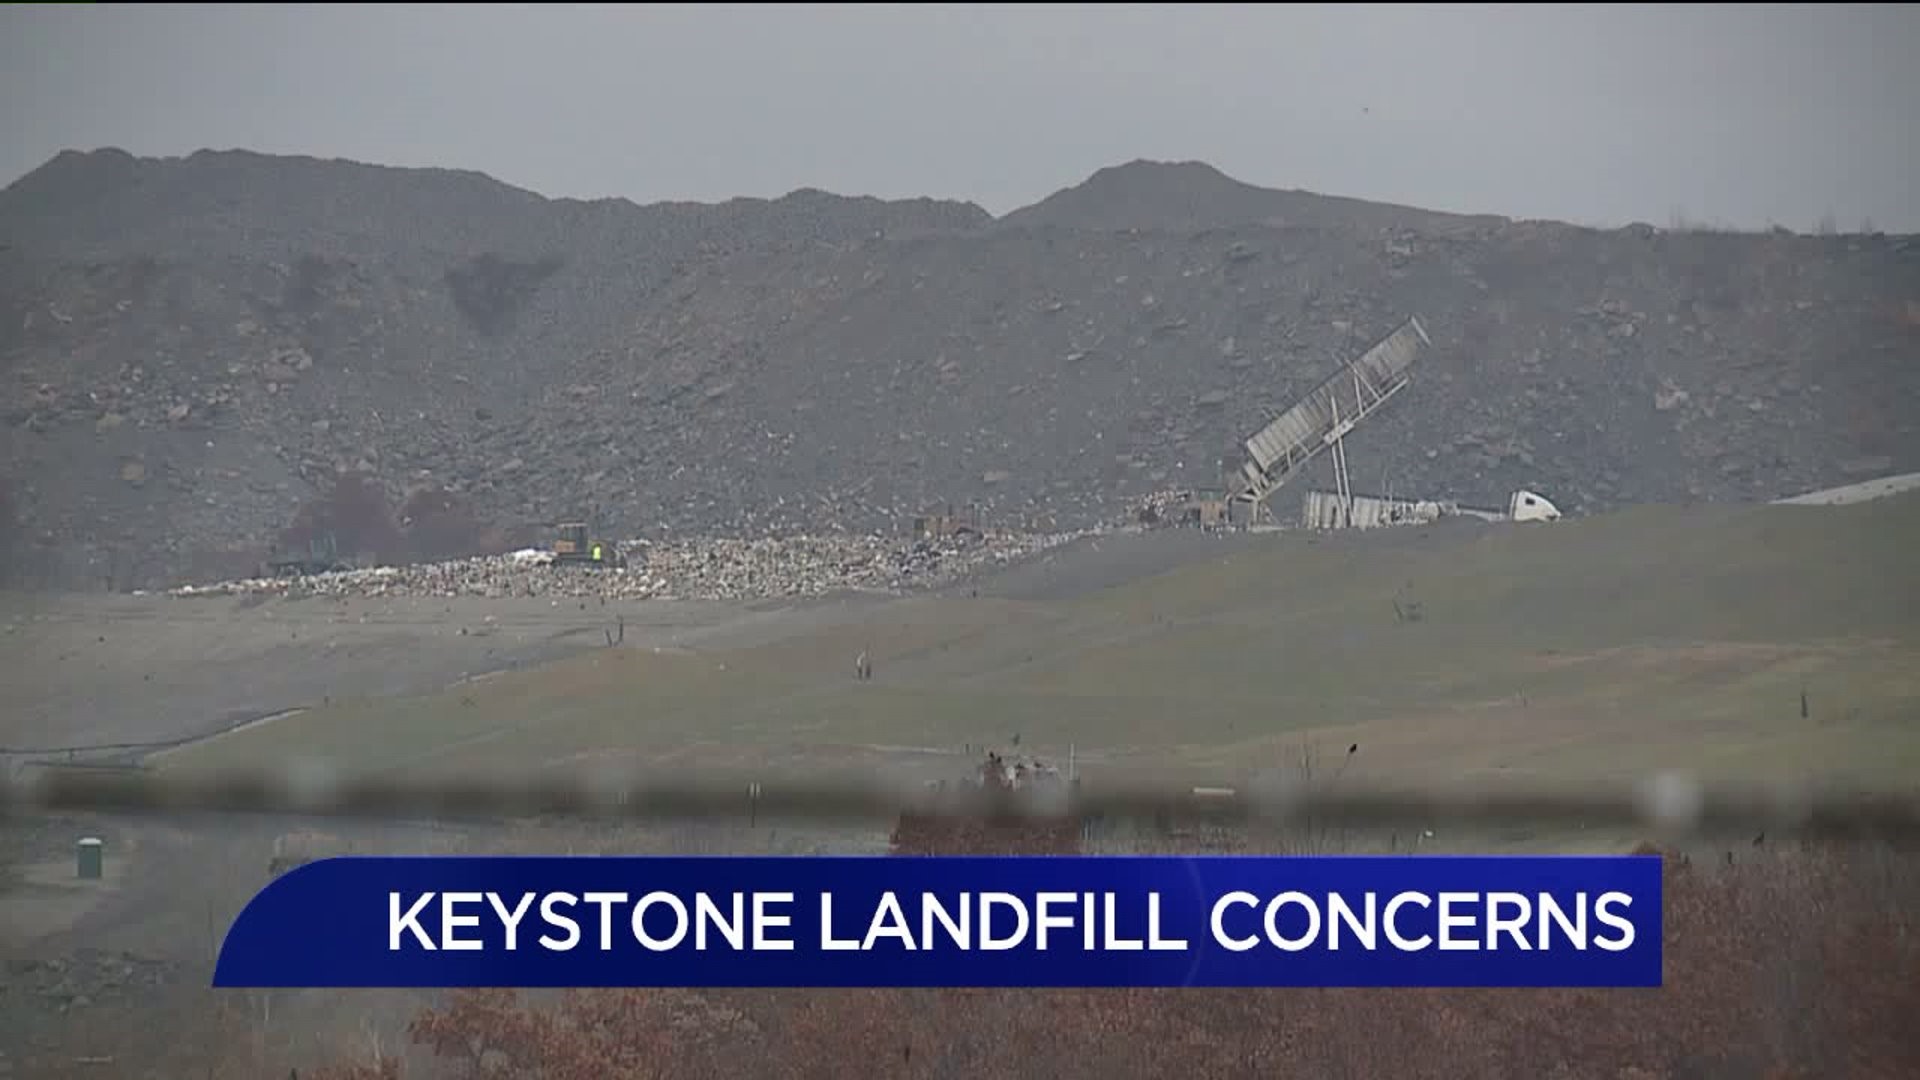 Concerns Over Keystone Landfill